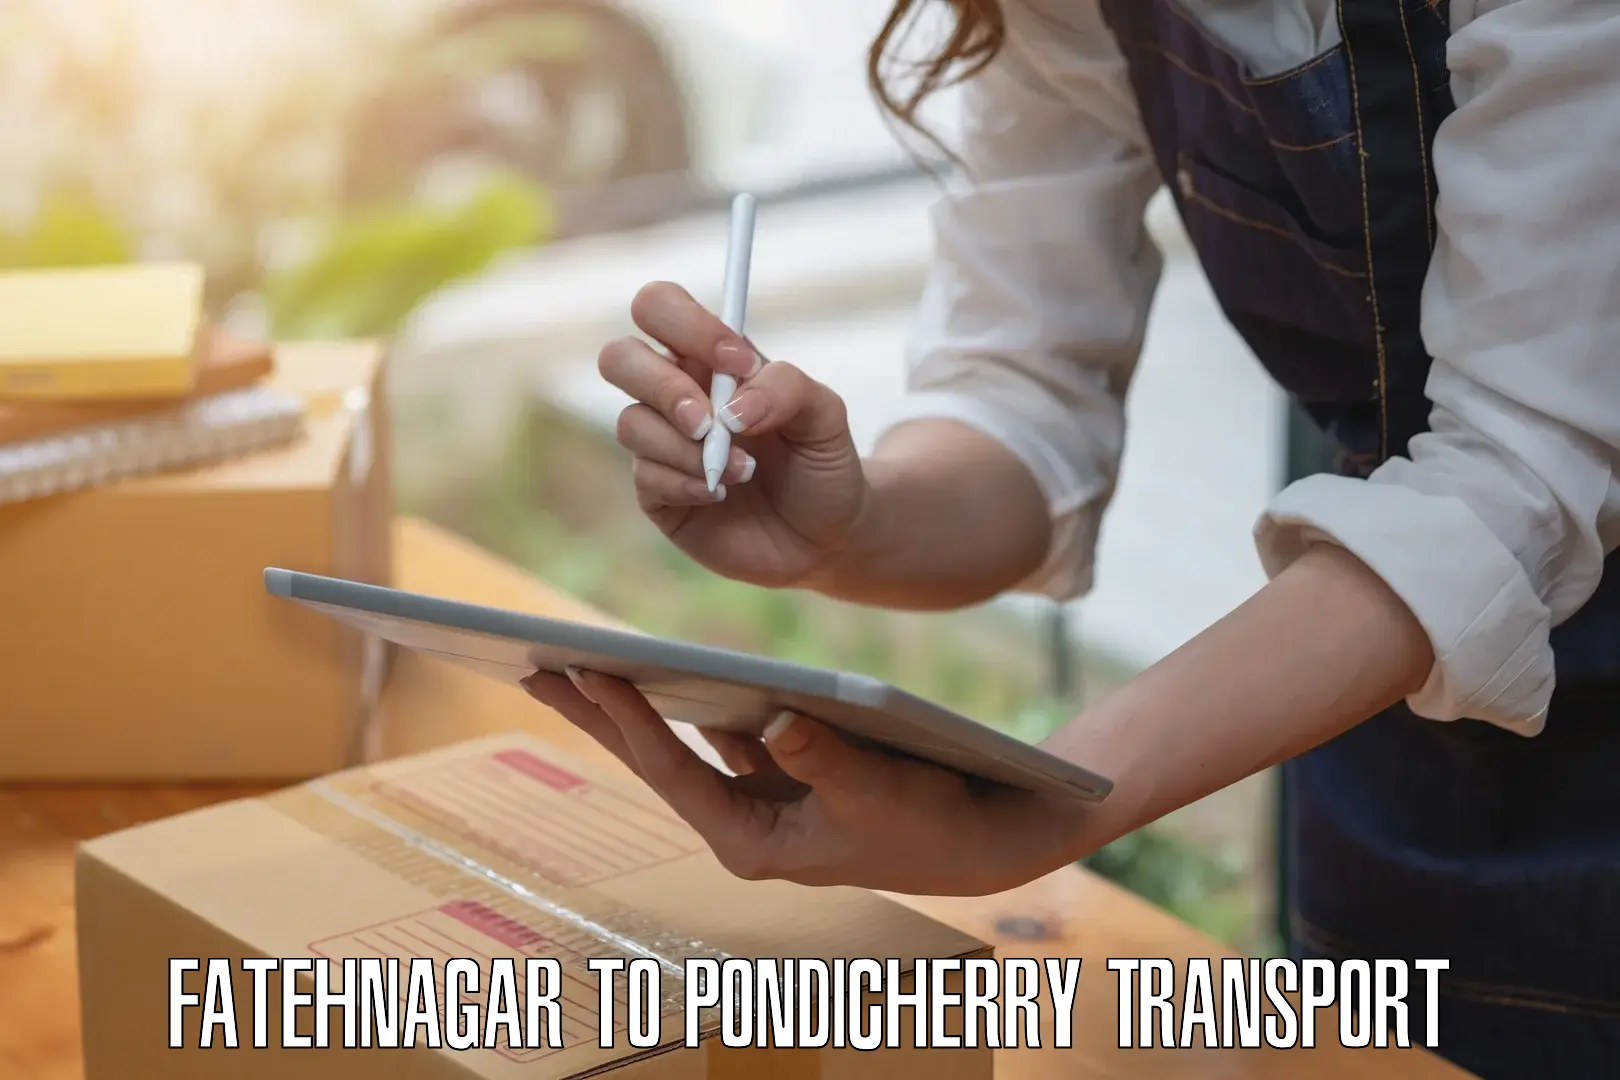 Two wheeler parcel service Fatehnagar to Pondicherry